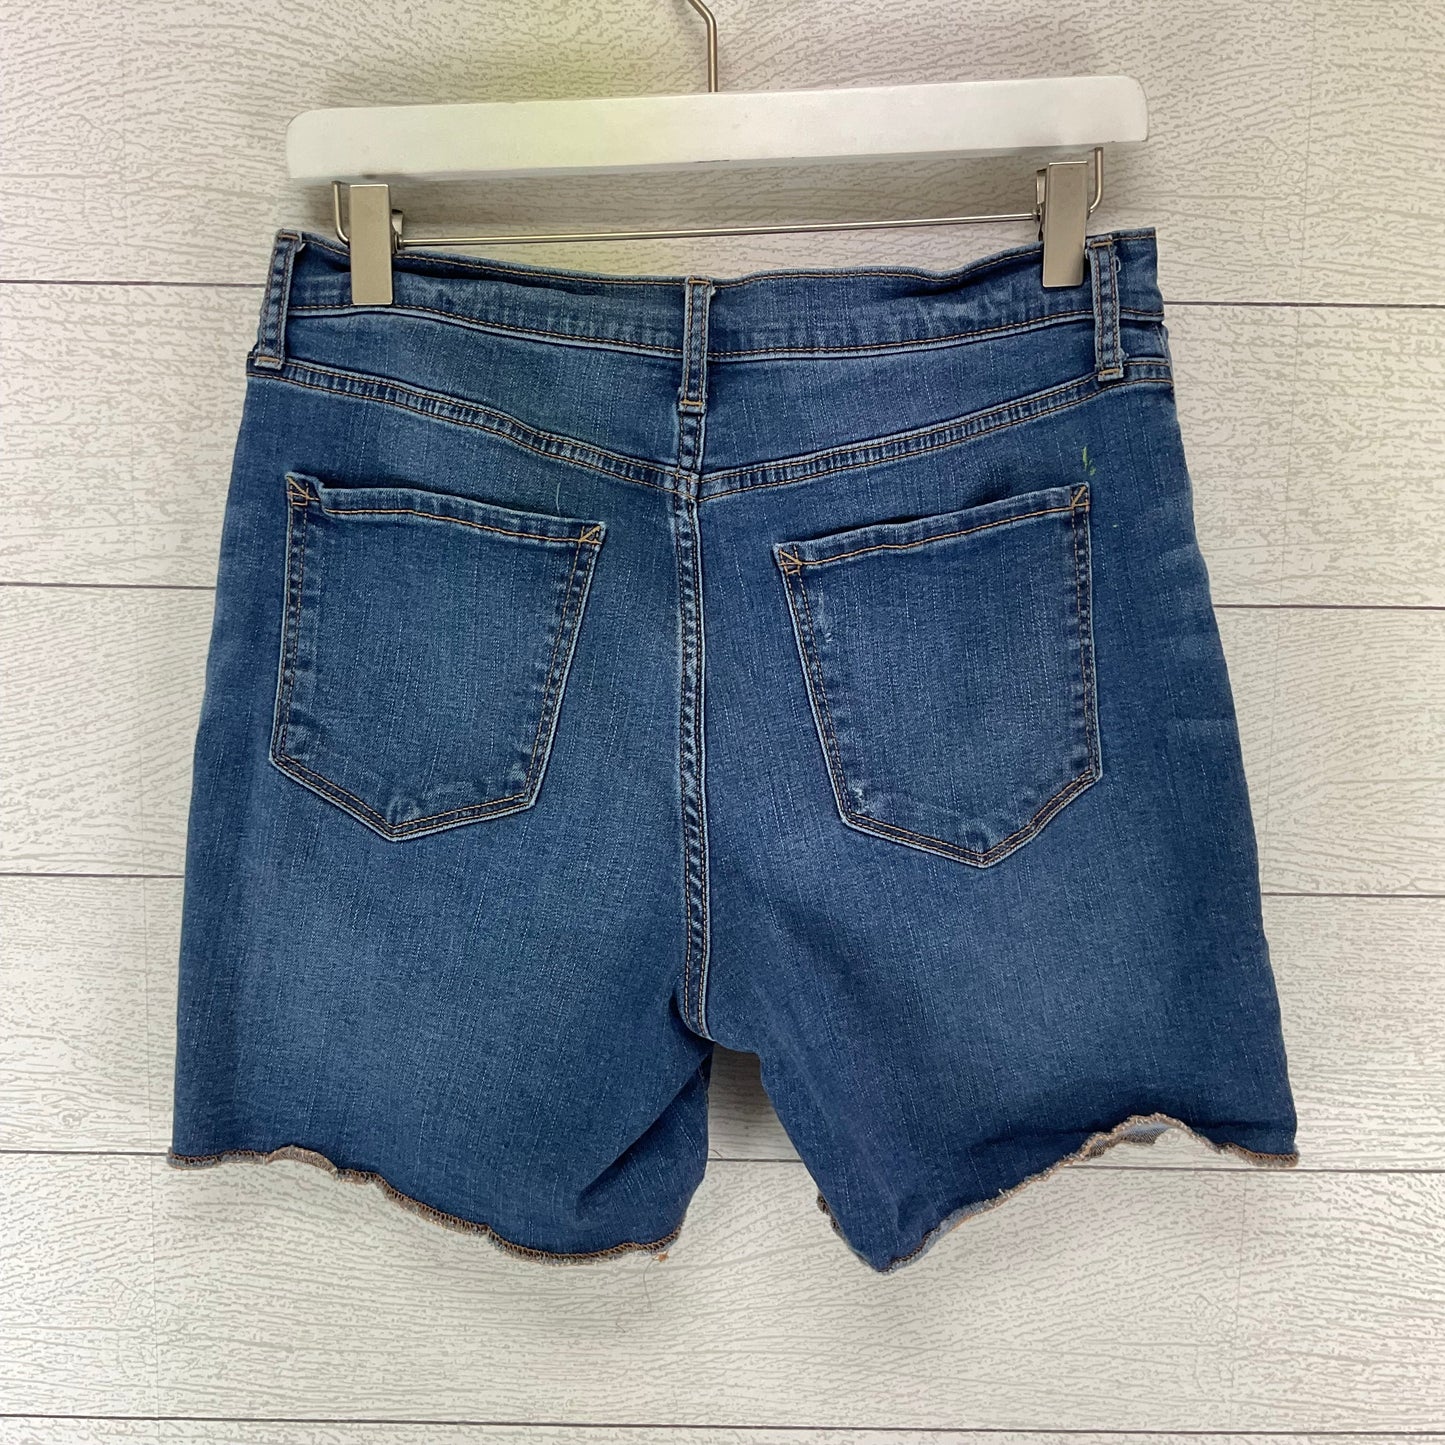 Blue Denim Shorts Ana, Size 8